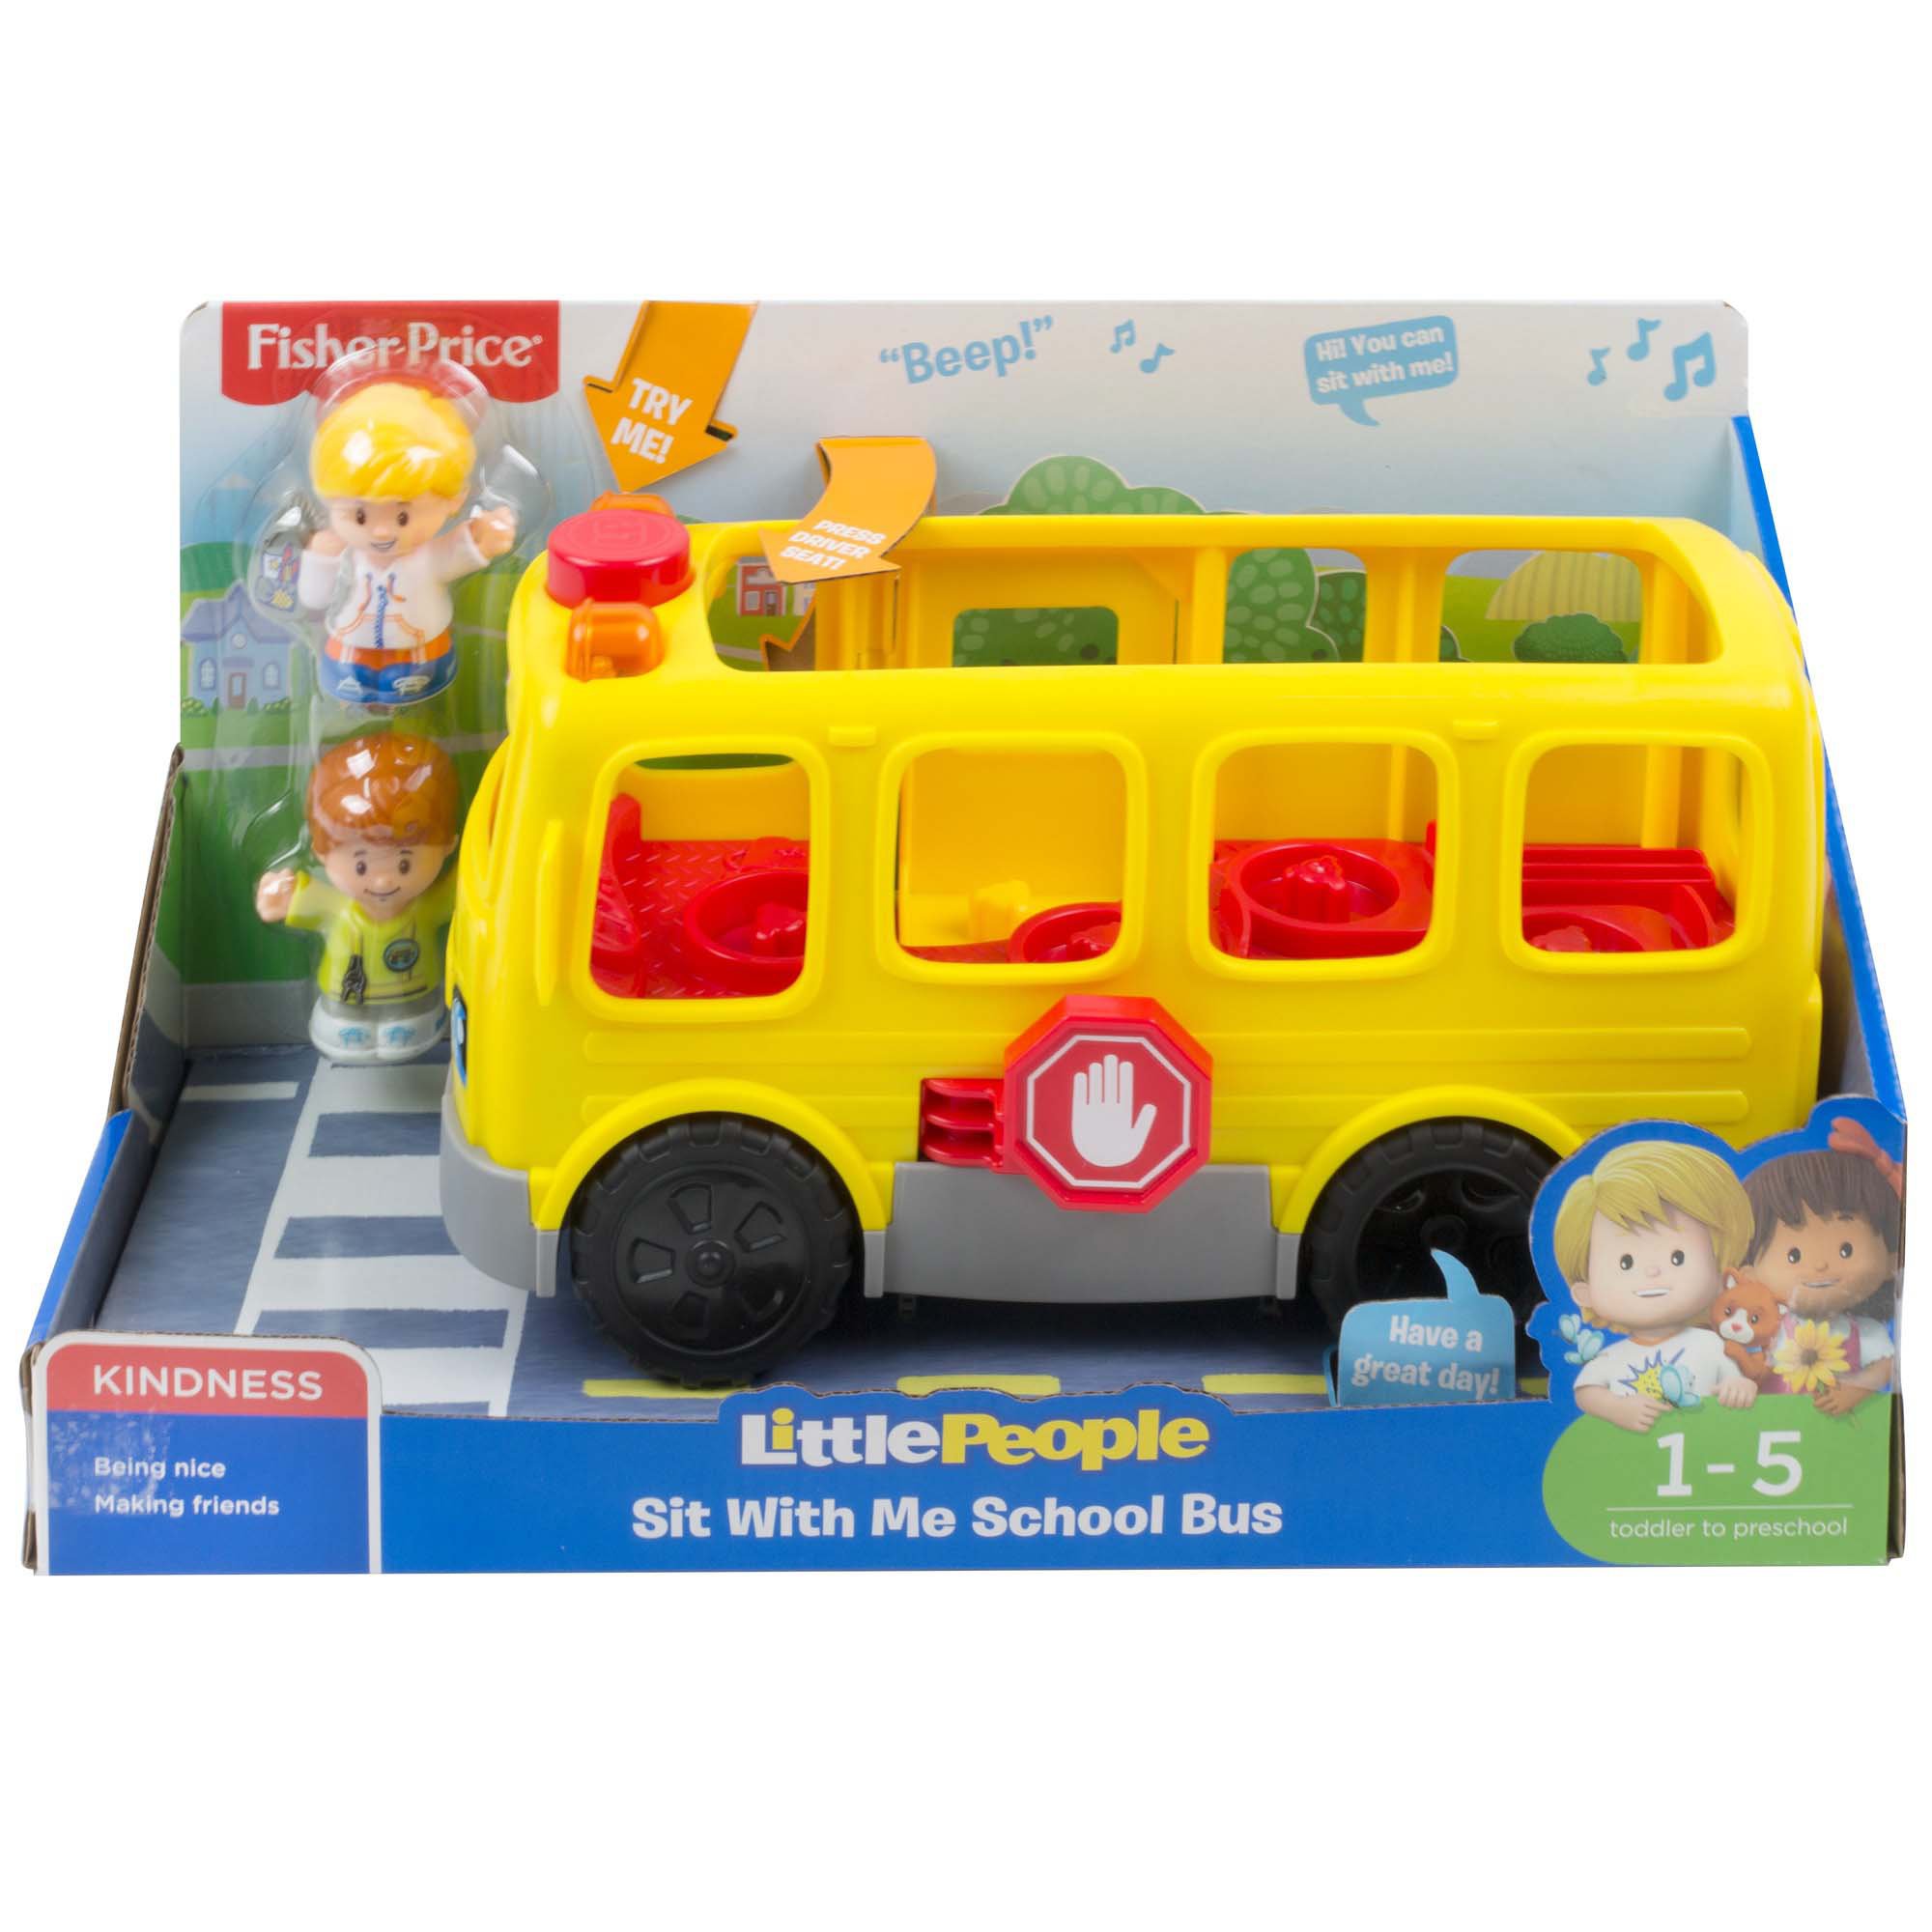 little people school bus toy